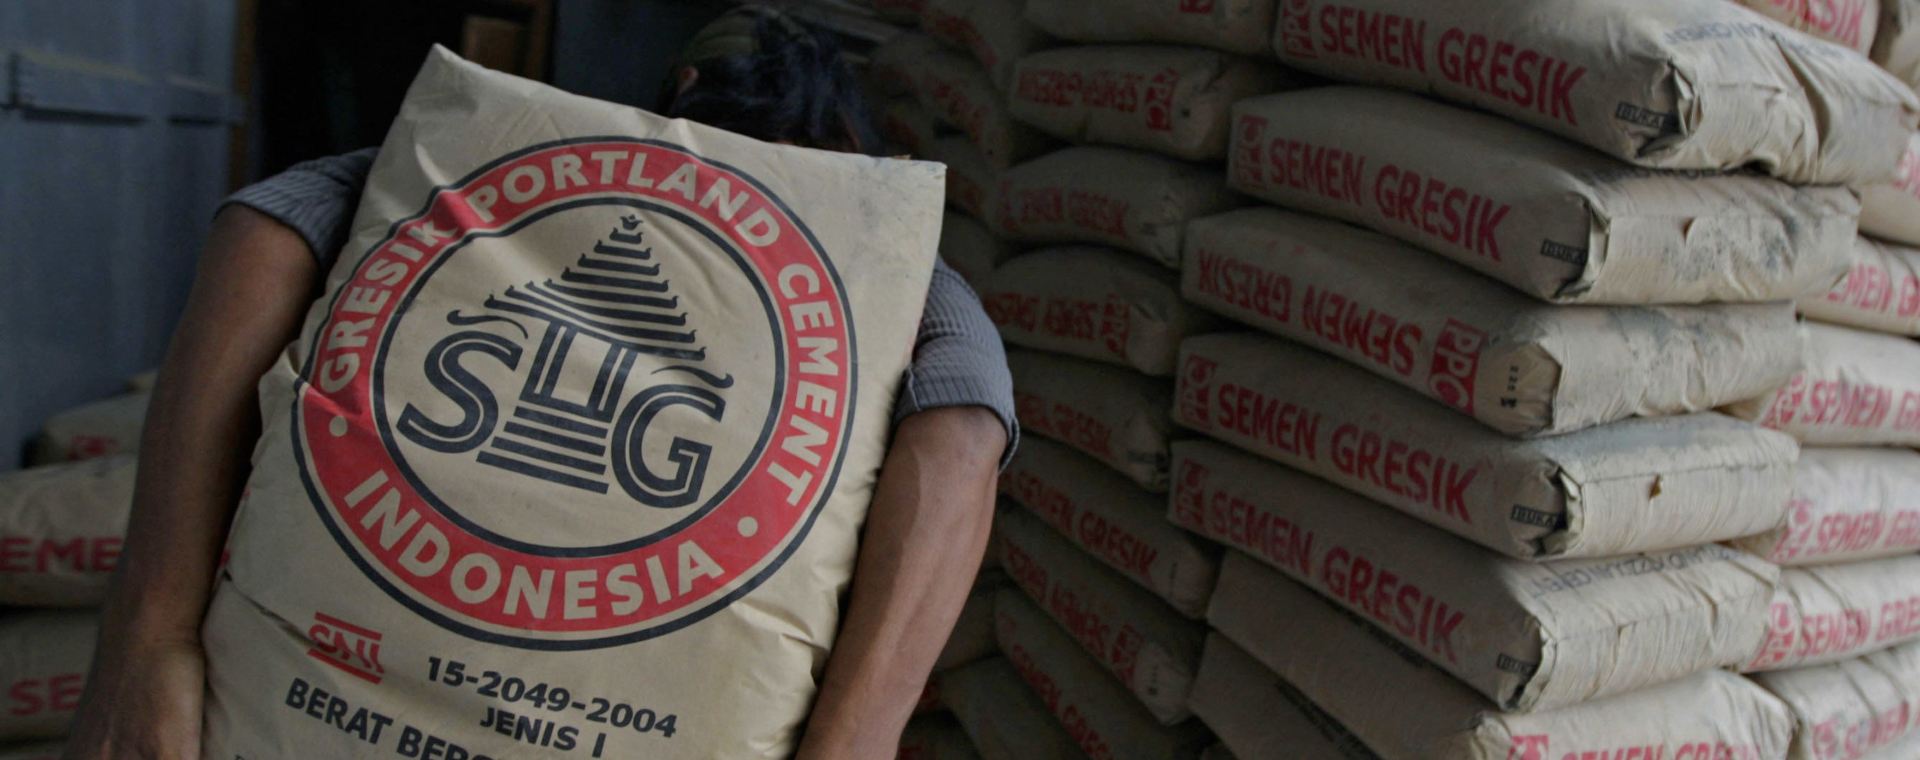 Seorang pekerja membawa kantong semen Semen Gresik di sebuah toko di Jakarta, Senin, (5/11/2007). Bloomberg - Dimas Ardian